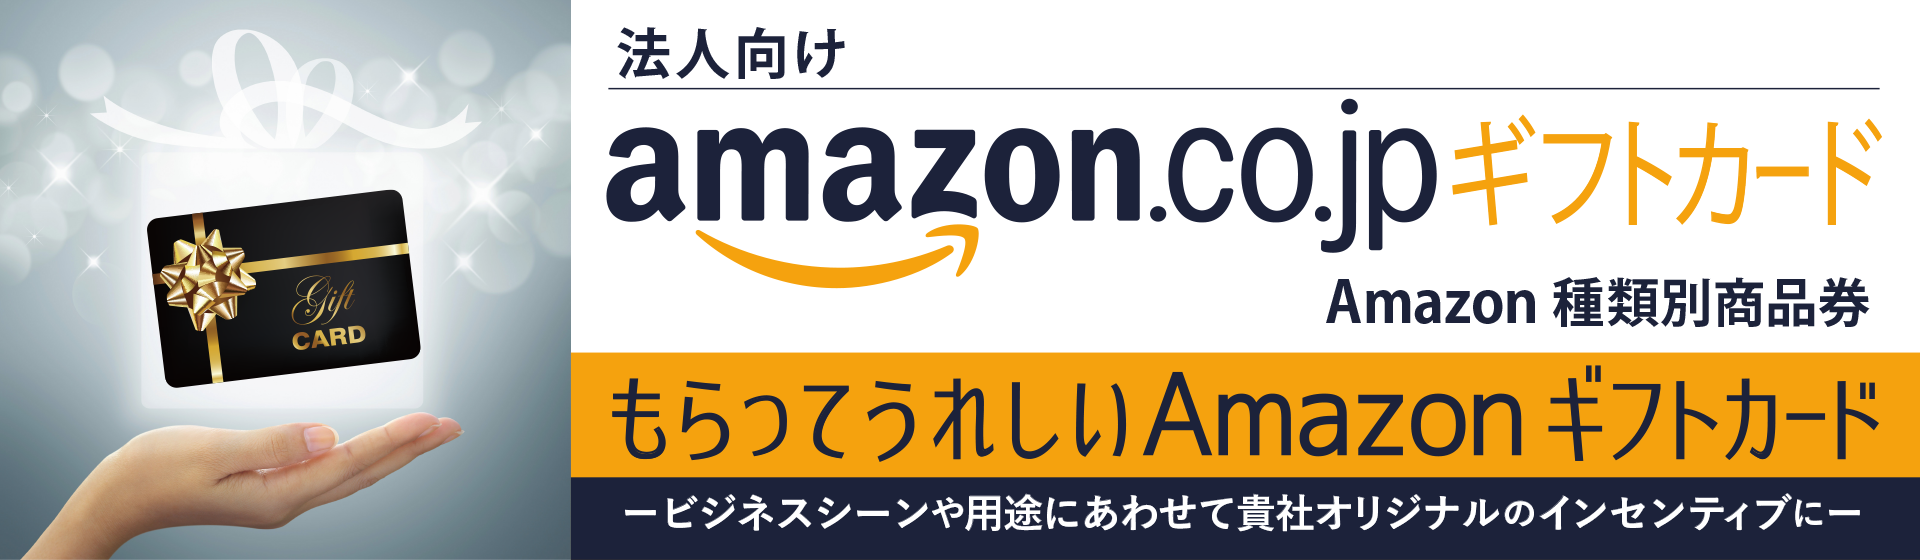 法人向けAmazonギフト券・Amazon種類別商品券